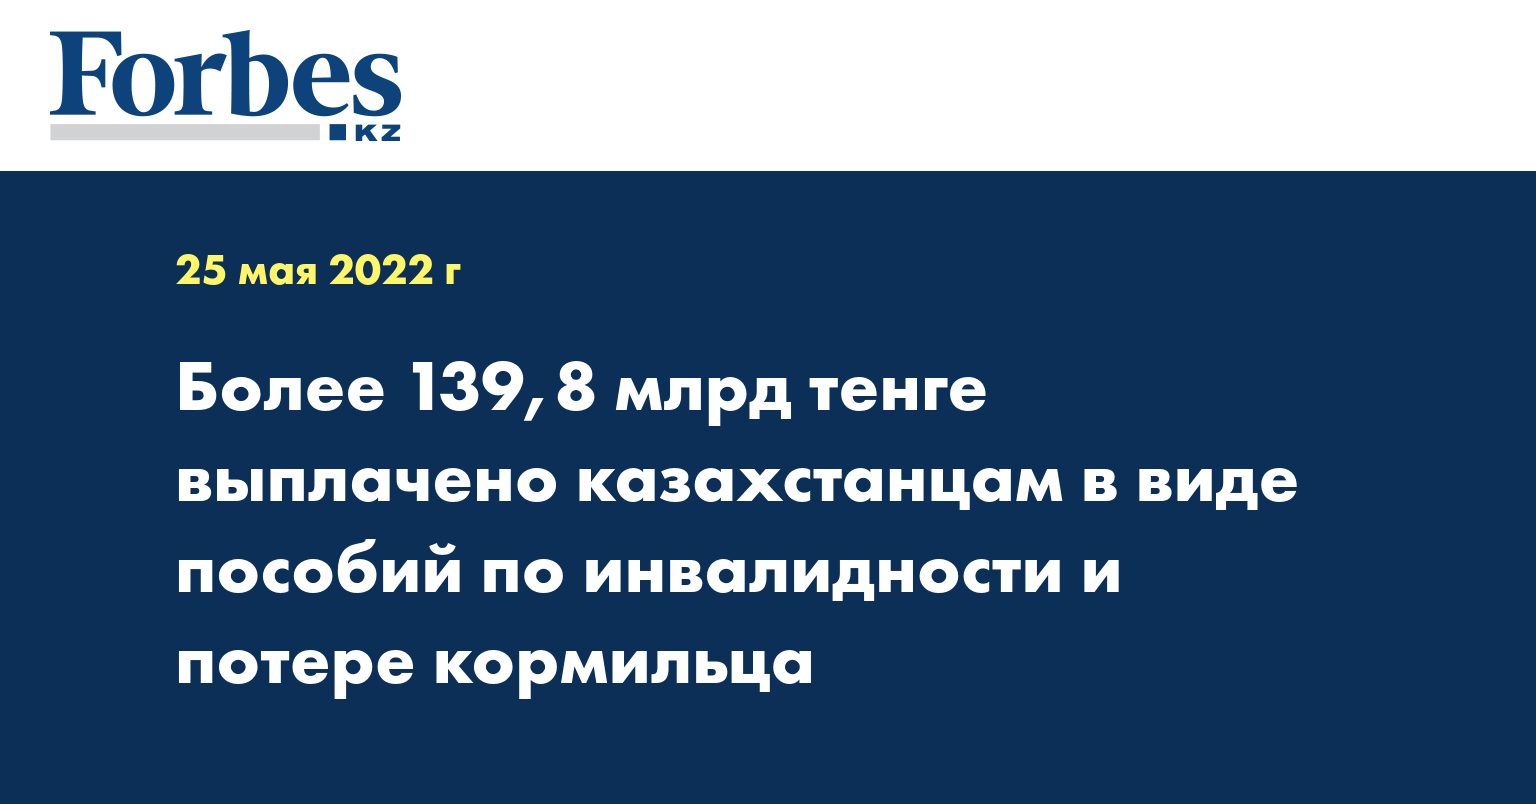 Более 139,8 млрд тенге выплачено казахстанцам в виде пособий по инвалидности и потере кормильца